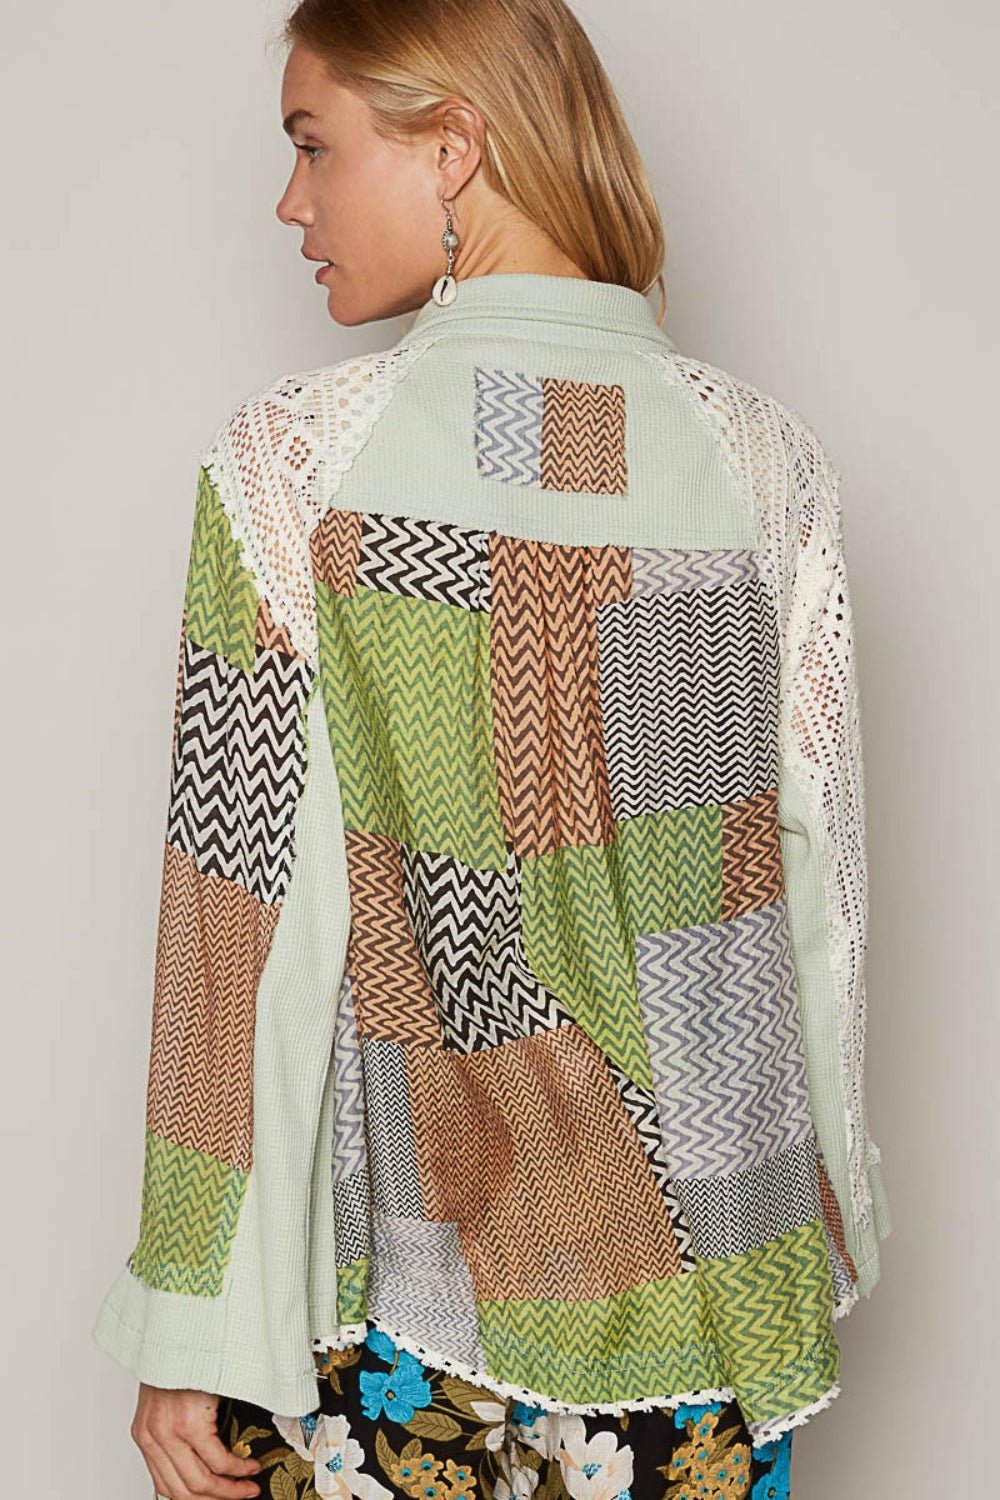 Color Block Crochet Long Sleeve Shirt in Mint GreenShirtPOL